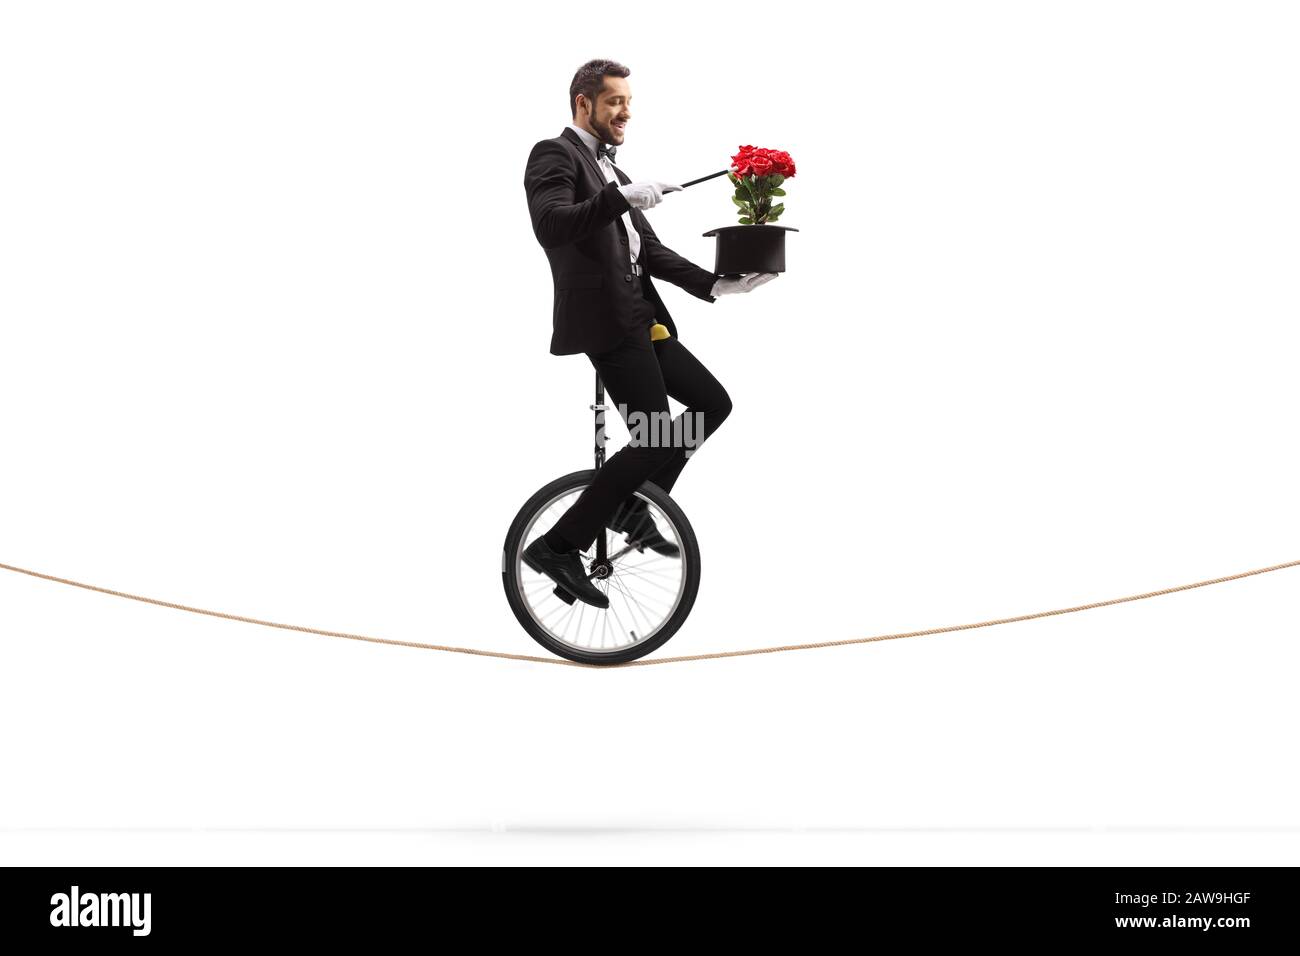 Zauberer mit einem Zauberstab, der auf einem Einrad reitet und einen Trick mit roten Rosen und einem Hut ausführt, der auf weißem Hintergrund isoliert ist Stockfoto